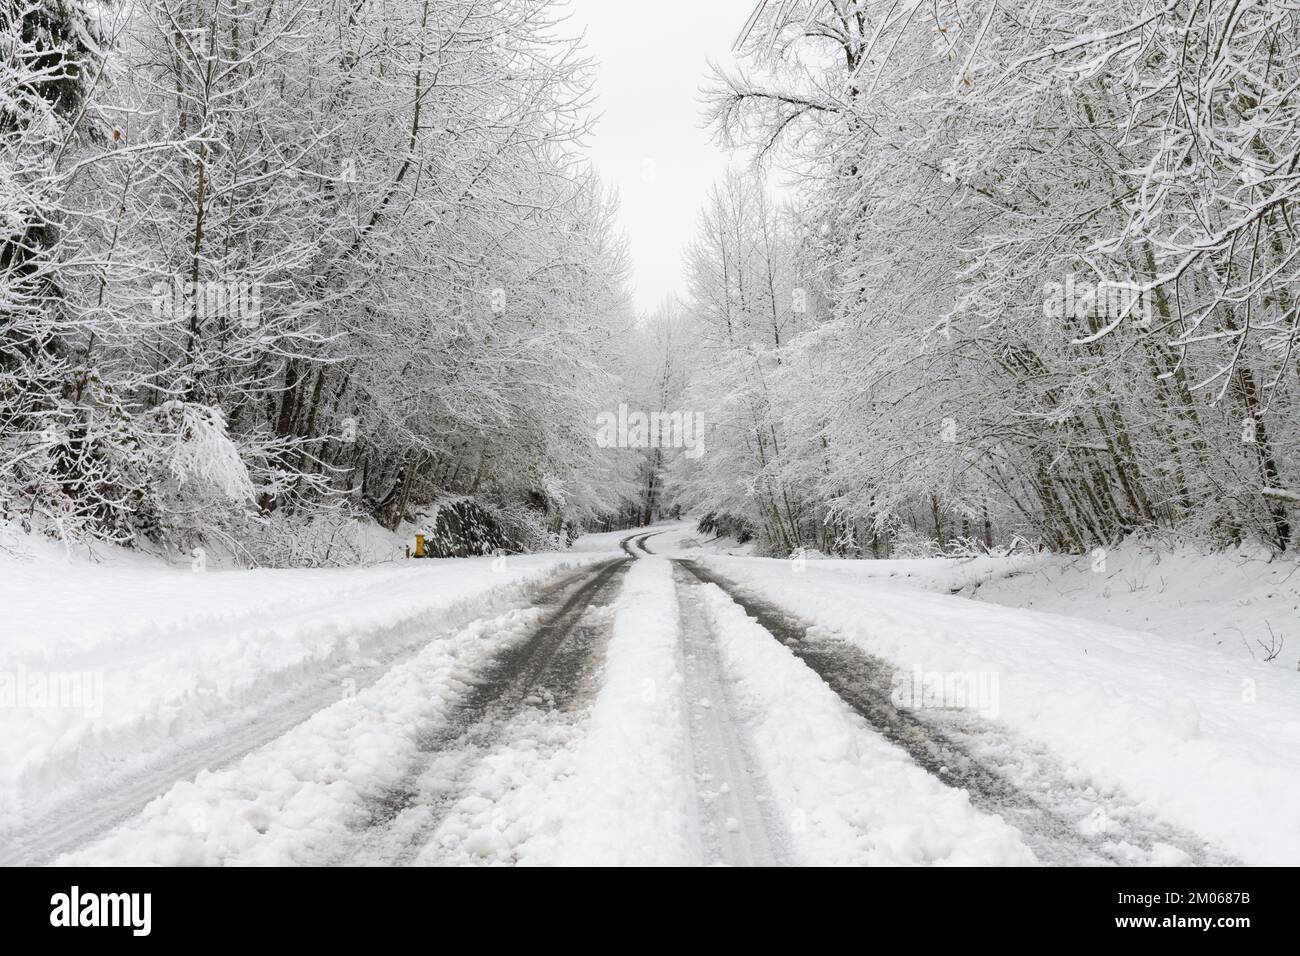 Schneebedeckte Straße mit Schlamm in den Reifenspuren und Bäumen, die über der verschneiten, winterlichen Landstraße hängen Stockfoto